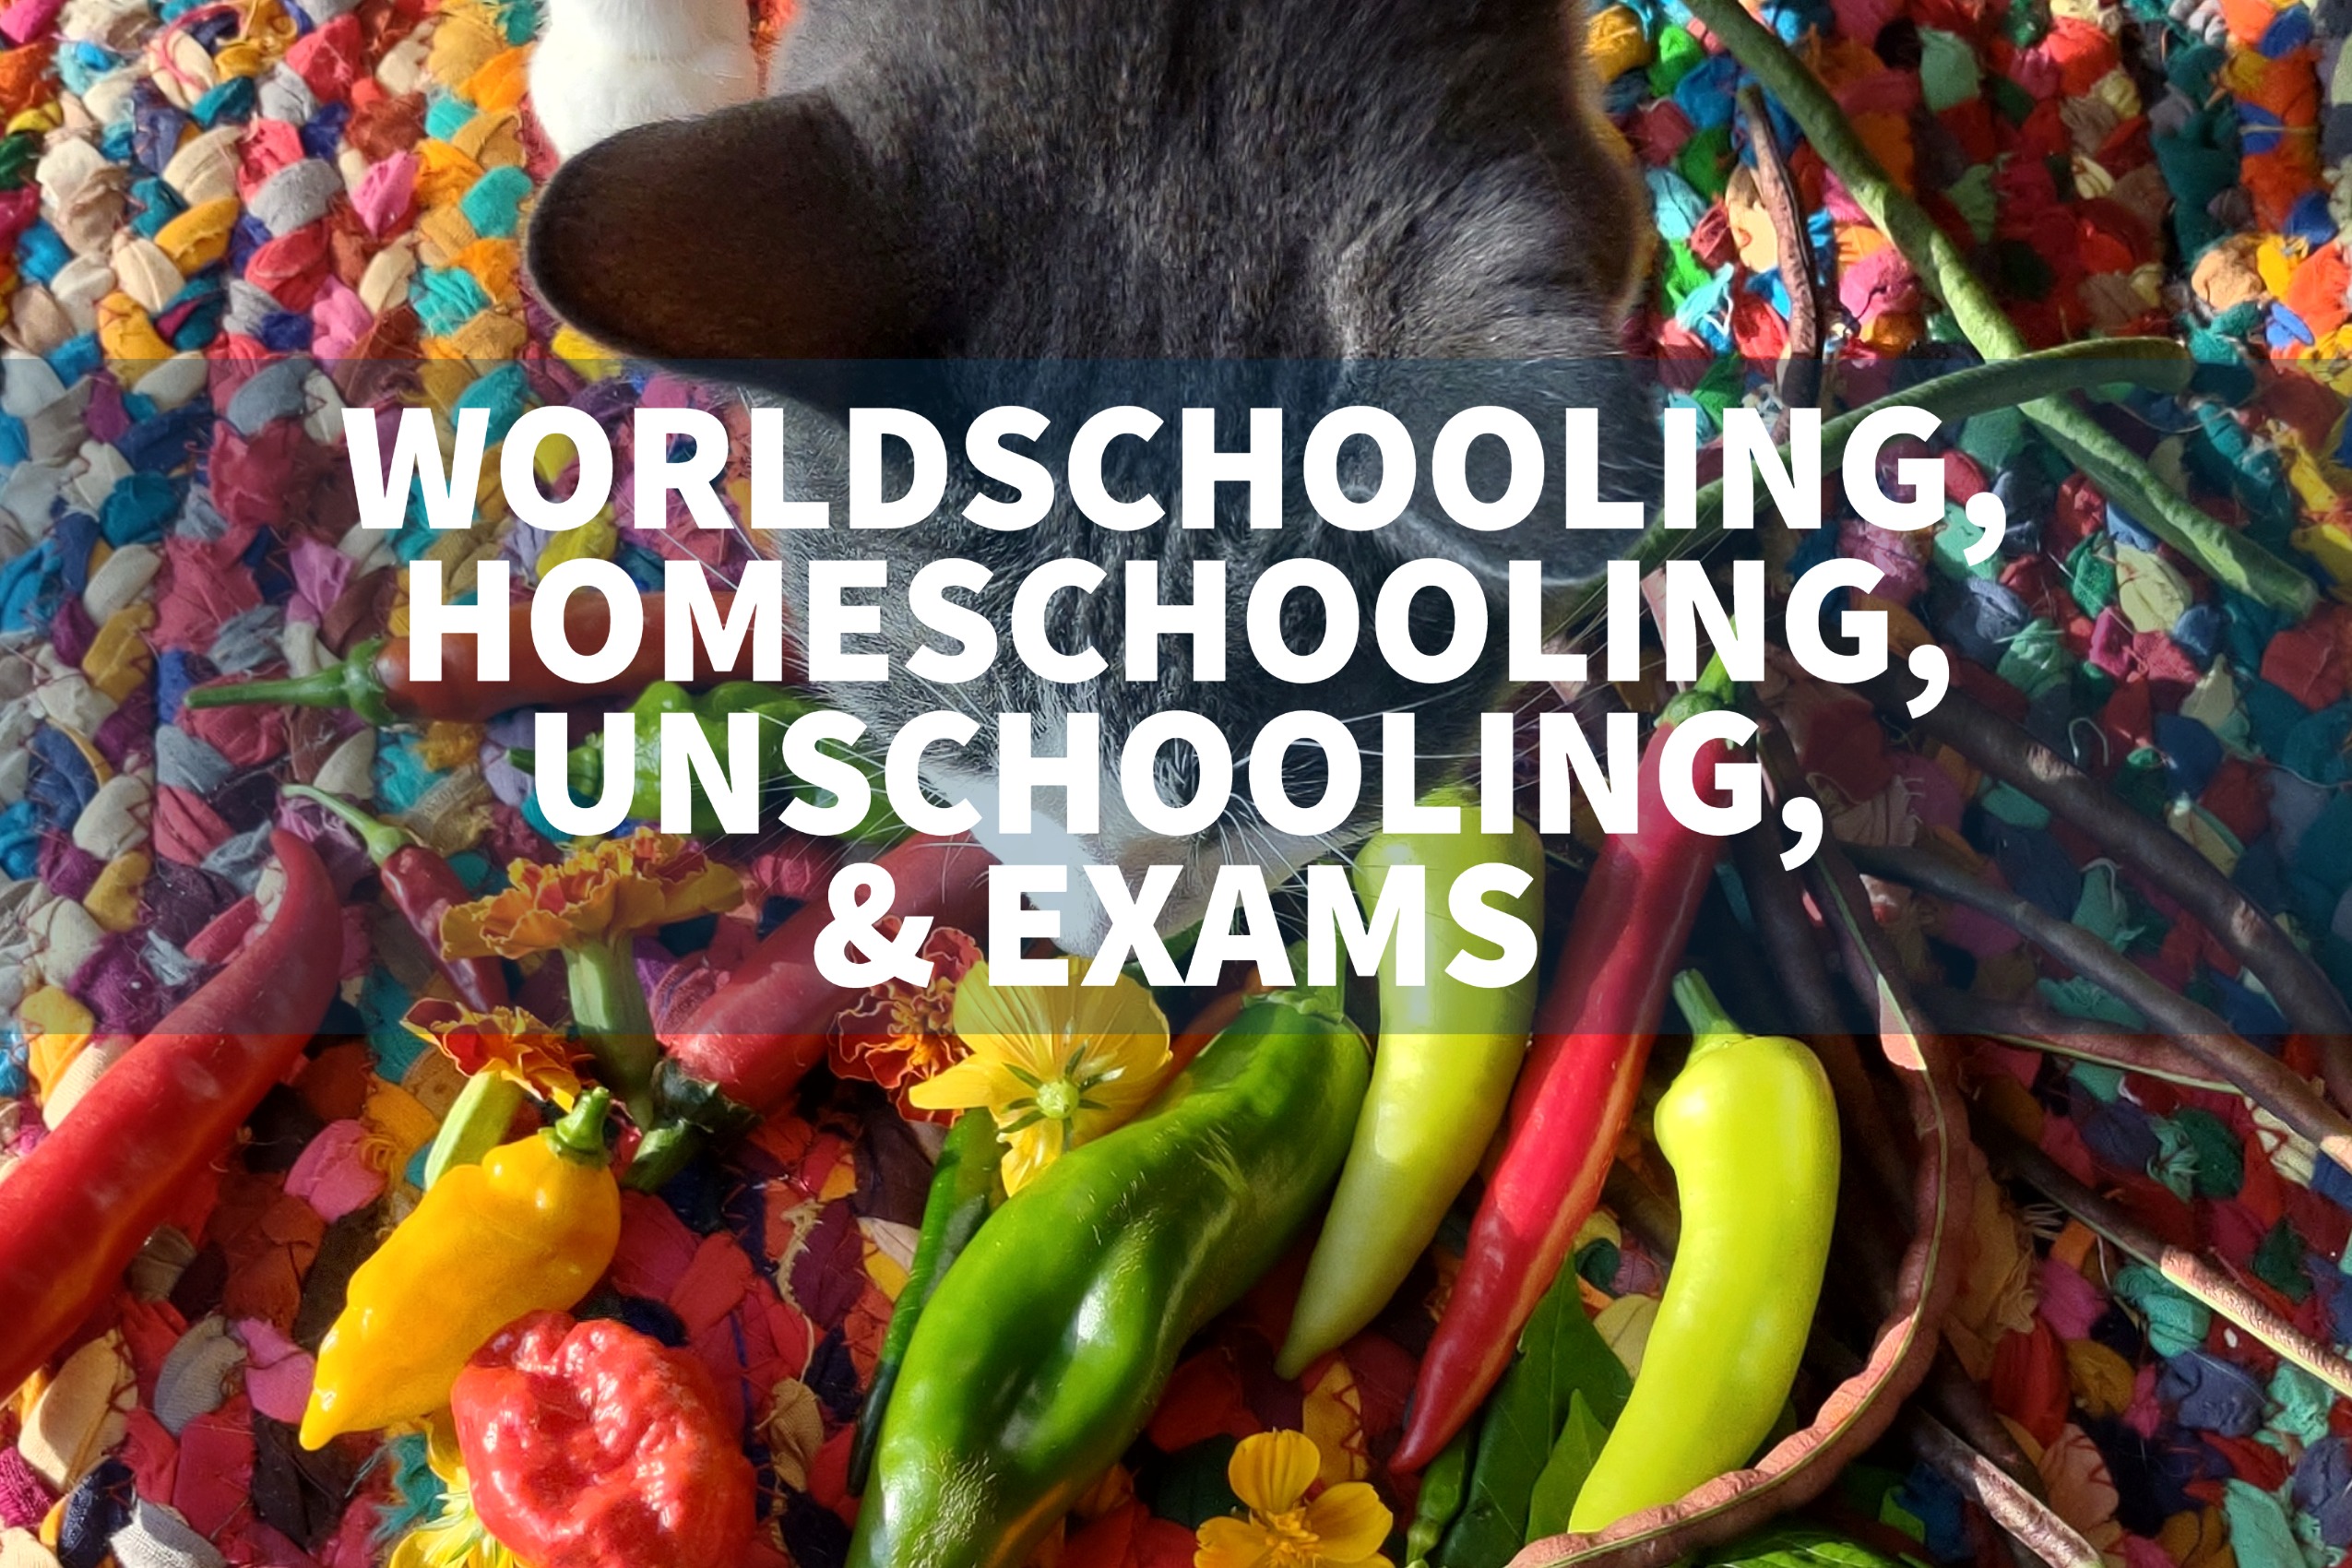 sitting exams for worldschoolers homeschoolers unschoolers